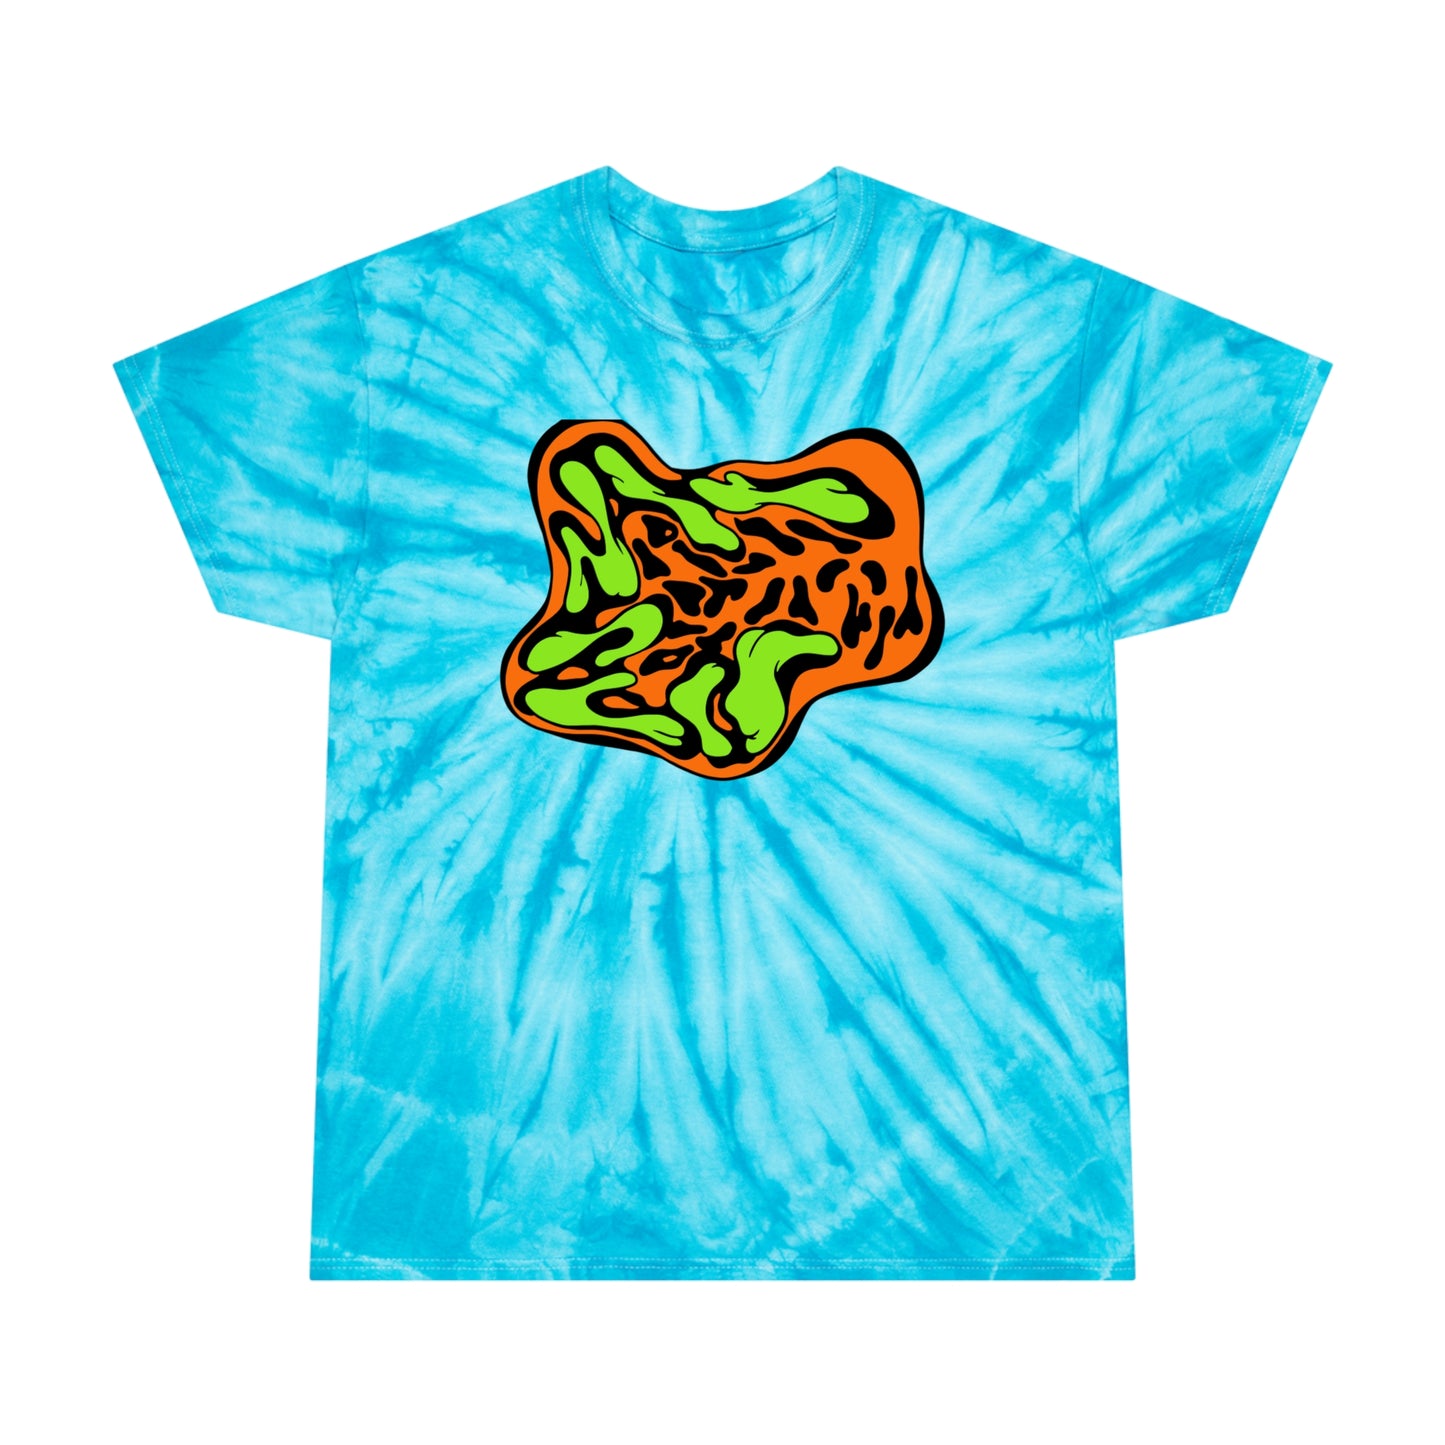 TMNT Swirl tie-dye t-shirt